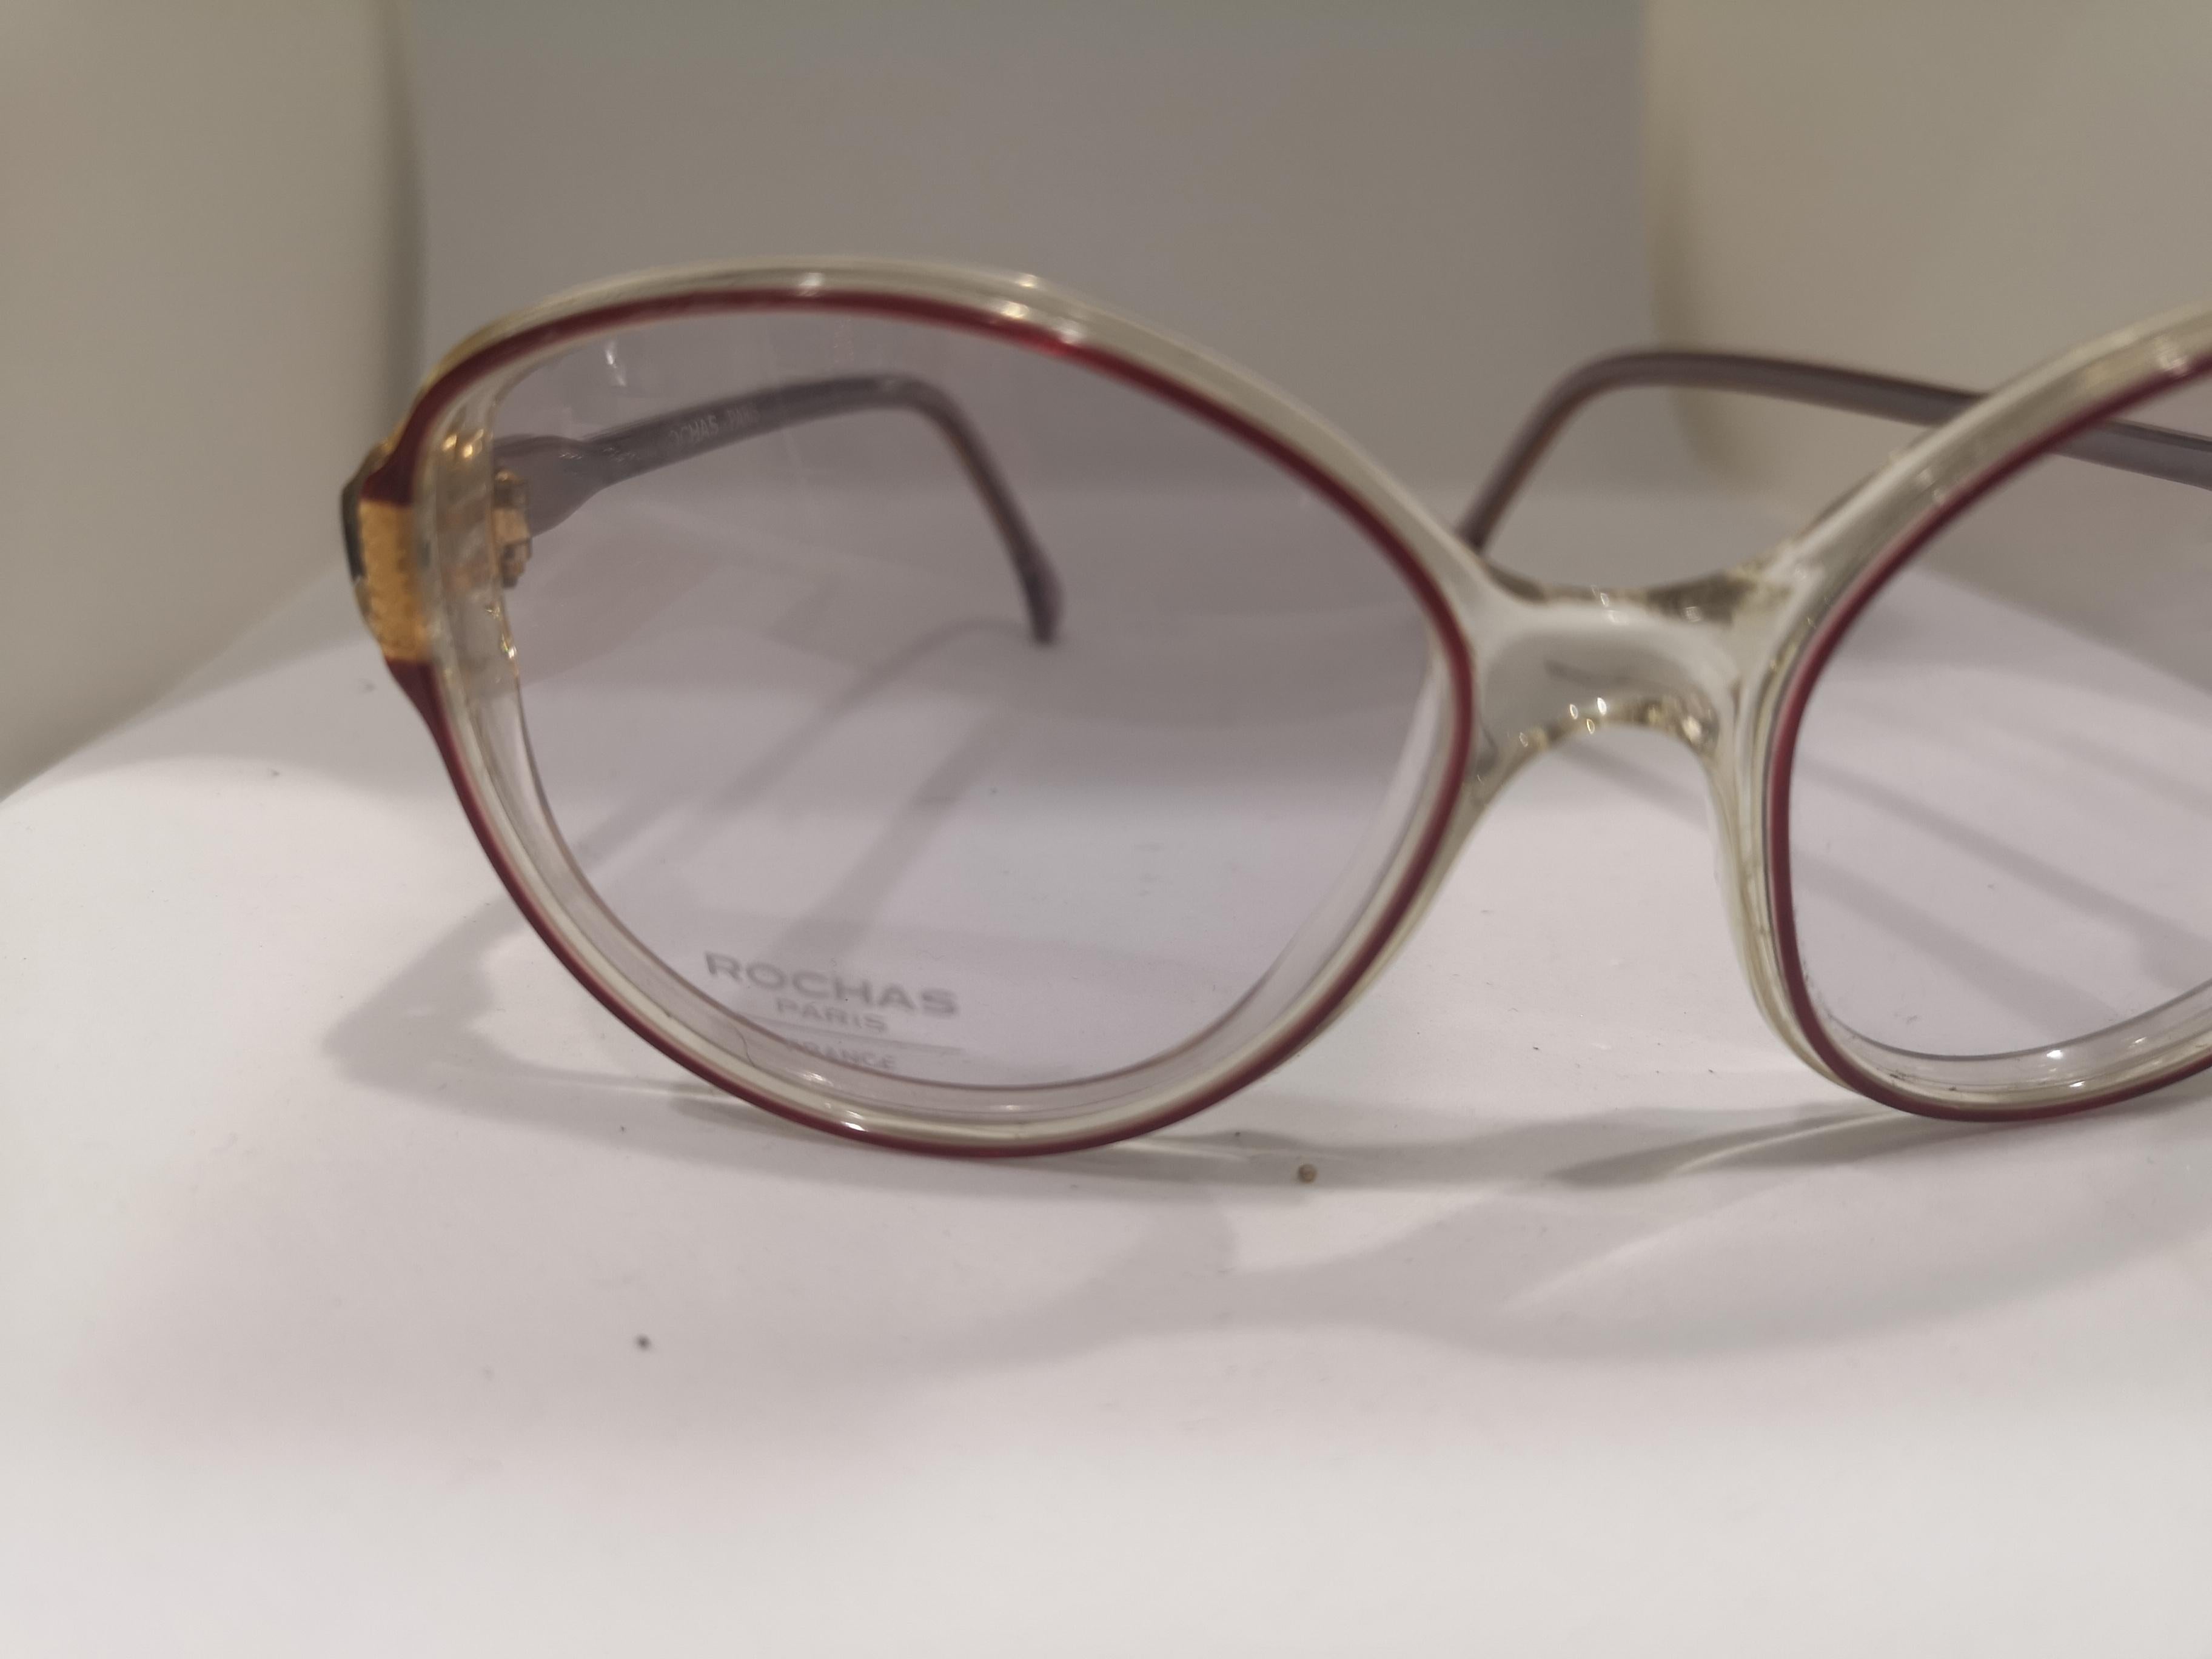 Rochas frame glasses 2